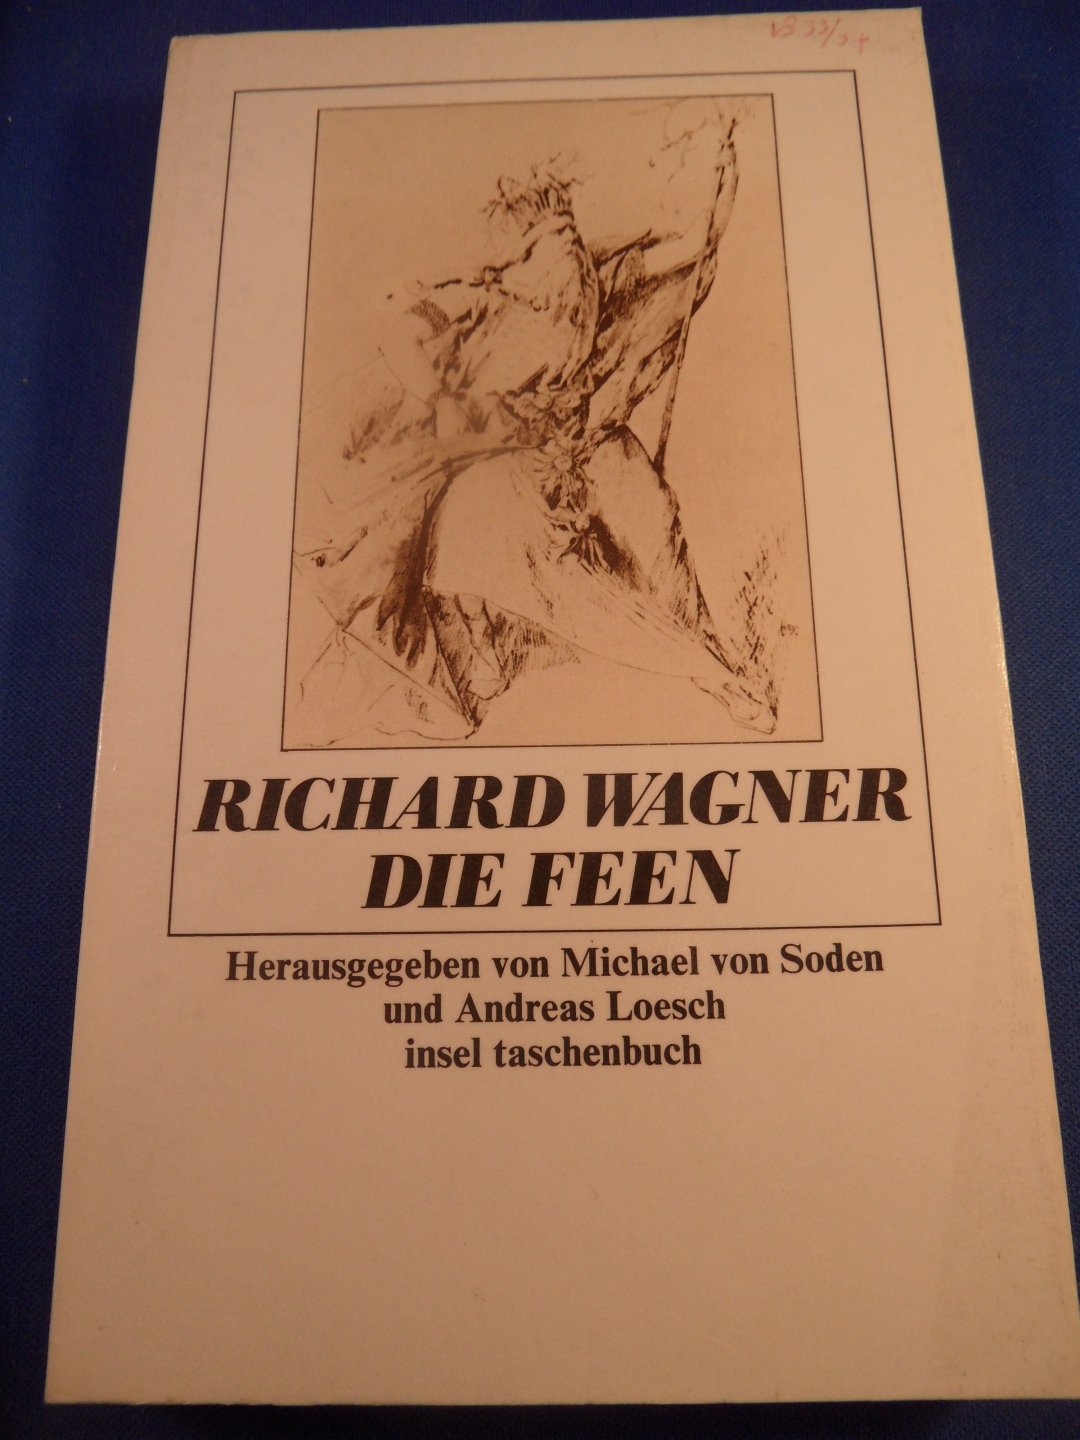 Wagner, R. - Die Feen, herausgeben von Michael Soden